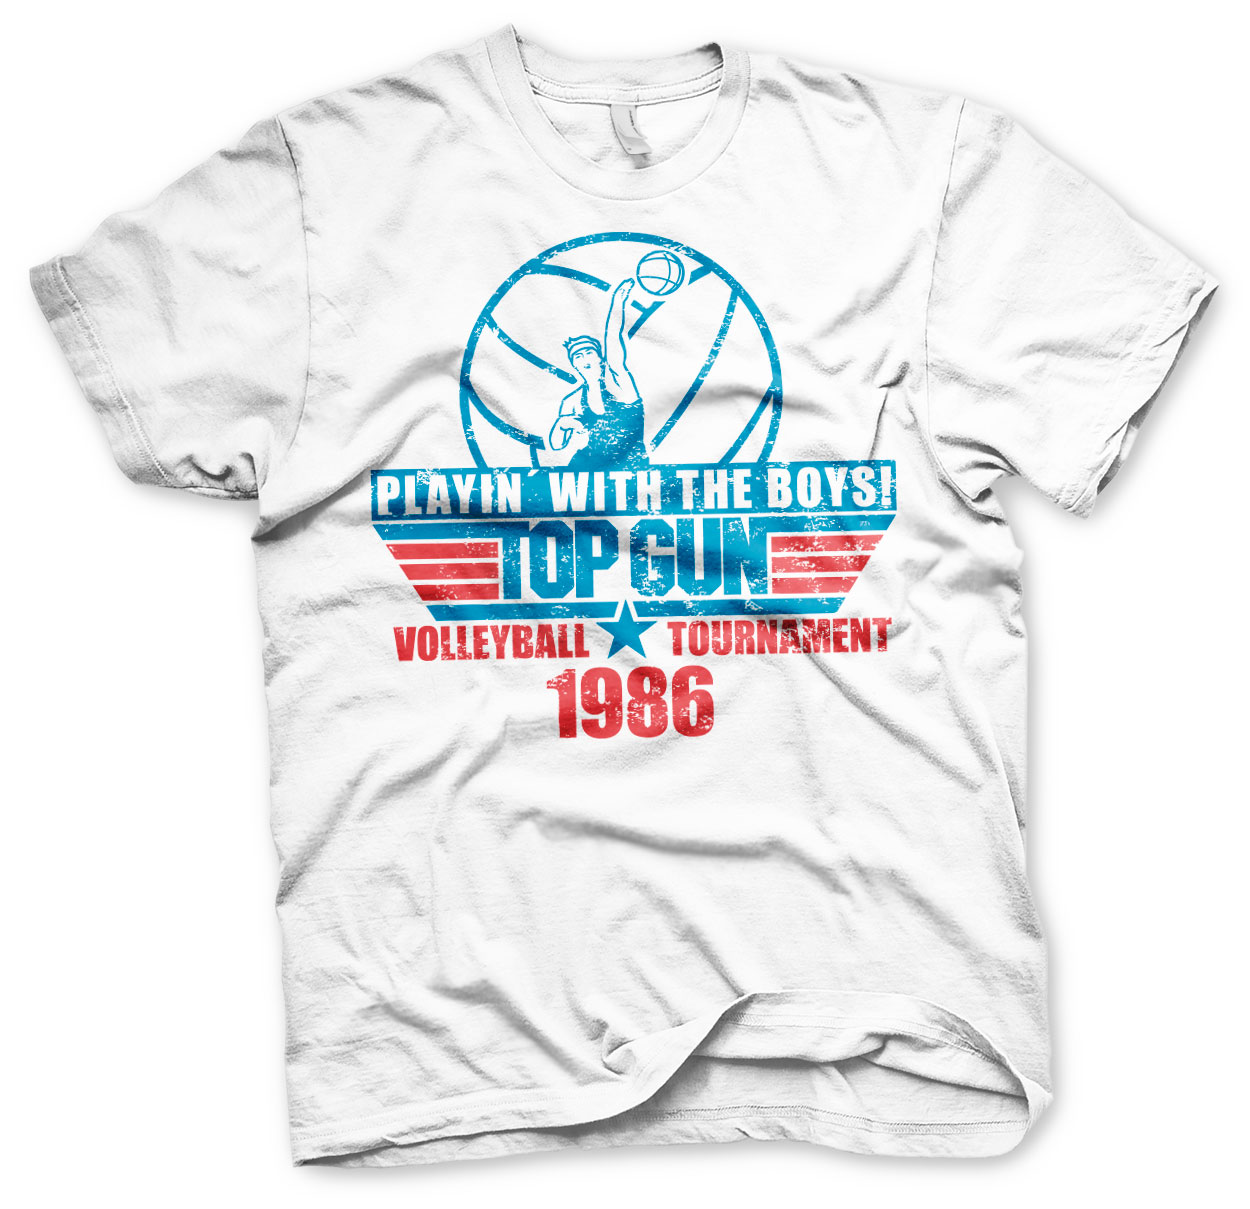 Top Gun - Volleyball Tournament T-Shirt